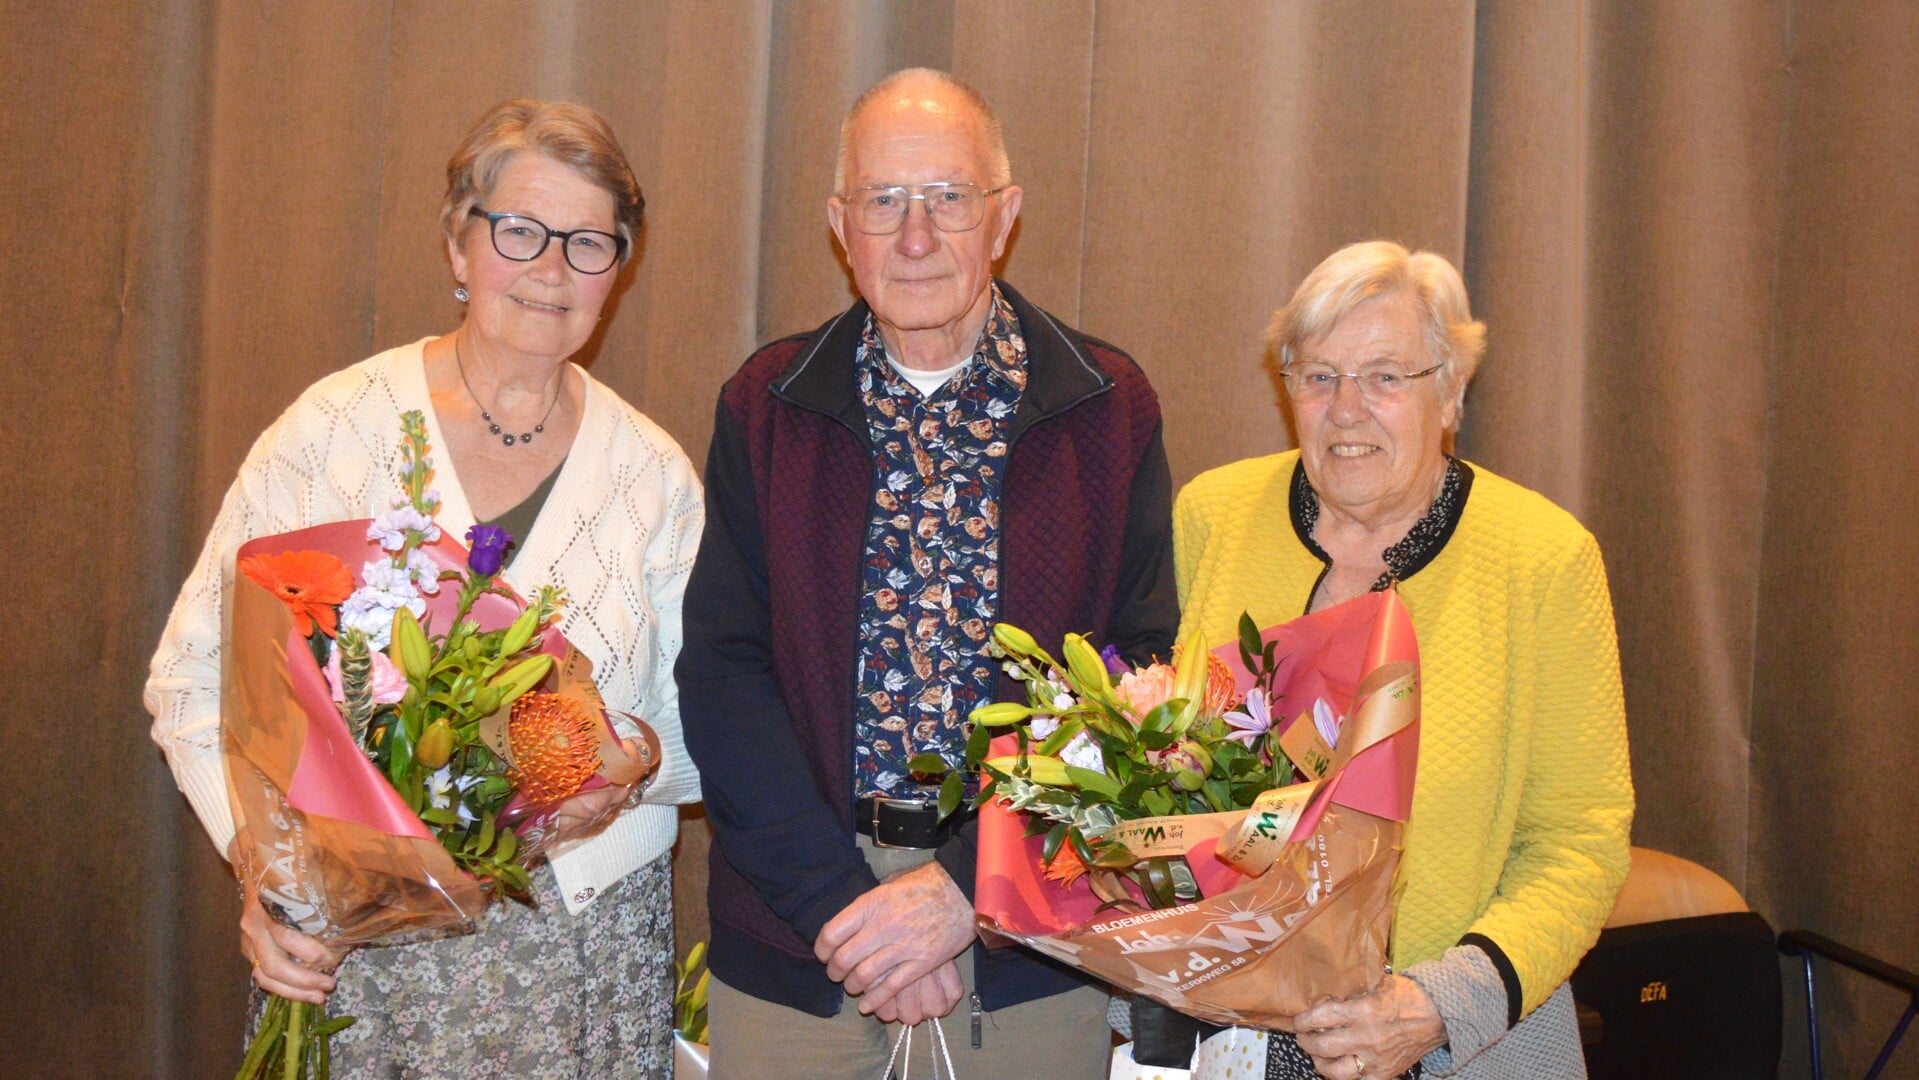 Josca Oevermans, Arie de Waard en Mien de Waard-Dekker in de bloemen